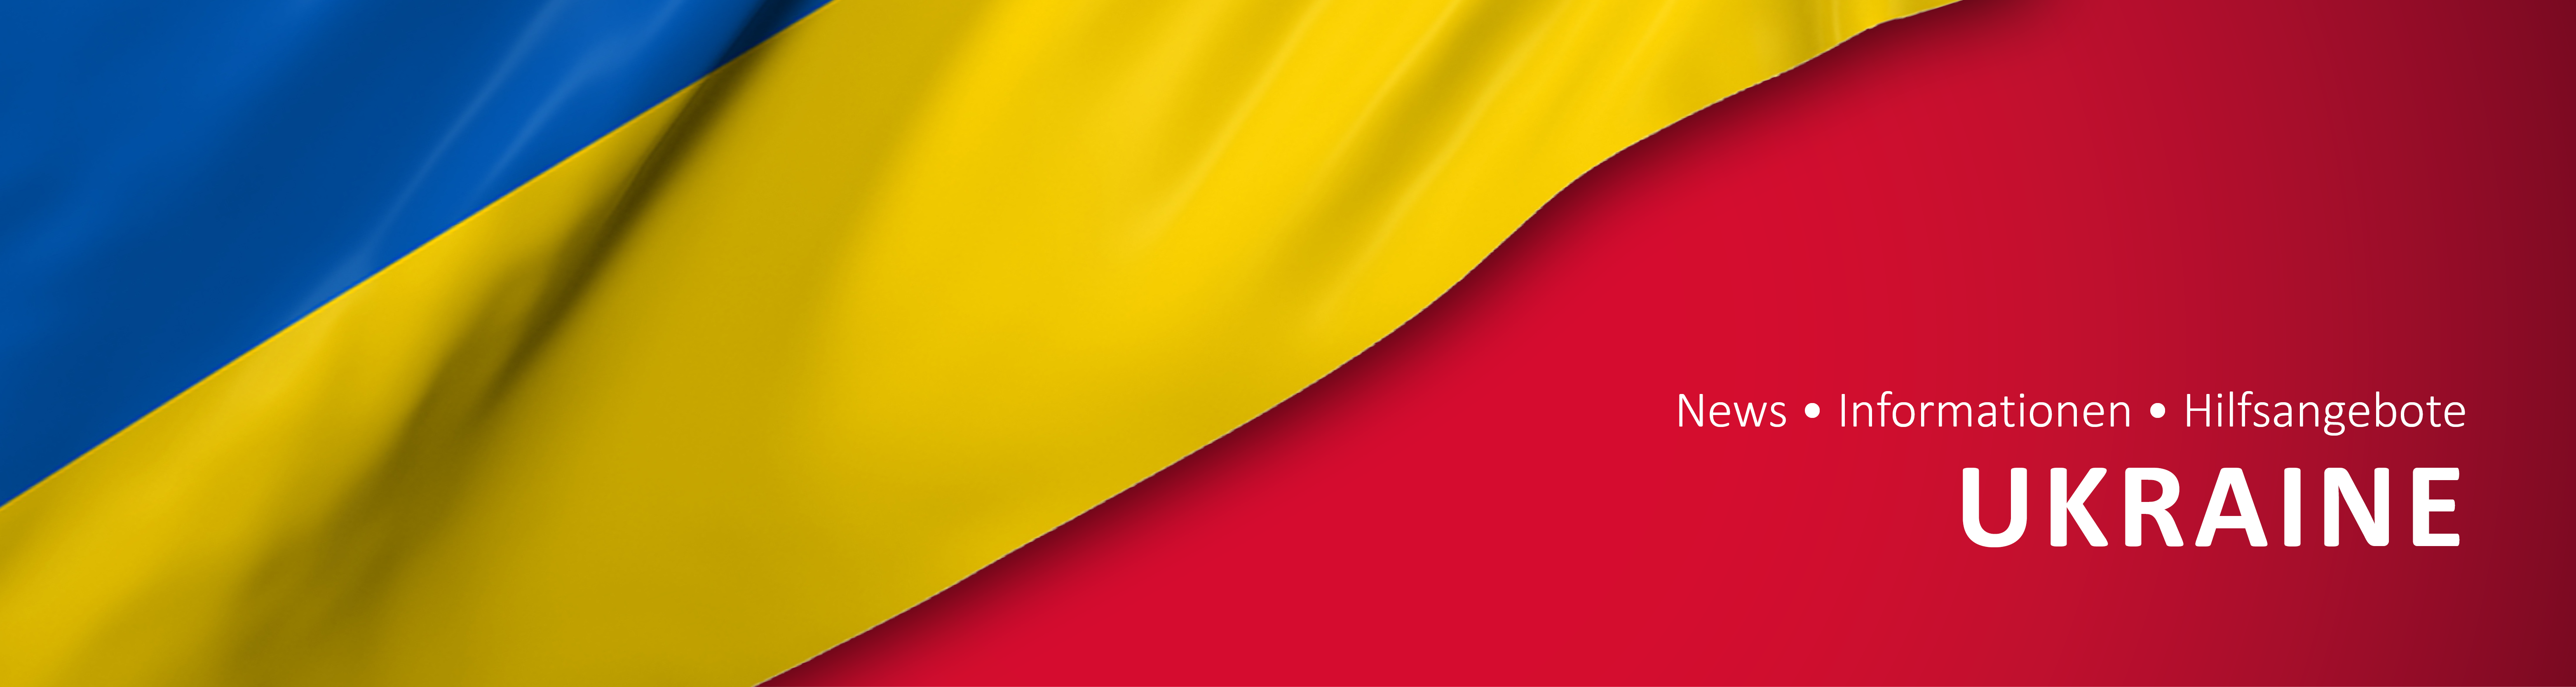 Headerbild mit Flagge der Ukraine und Titel der Seite